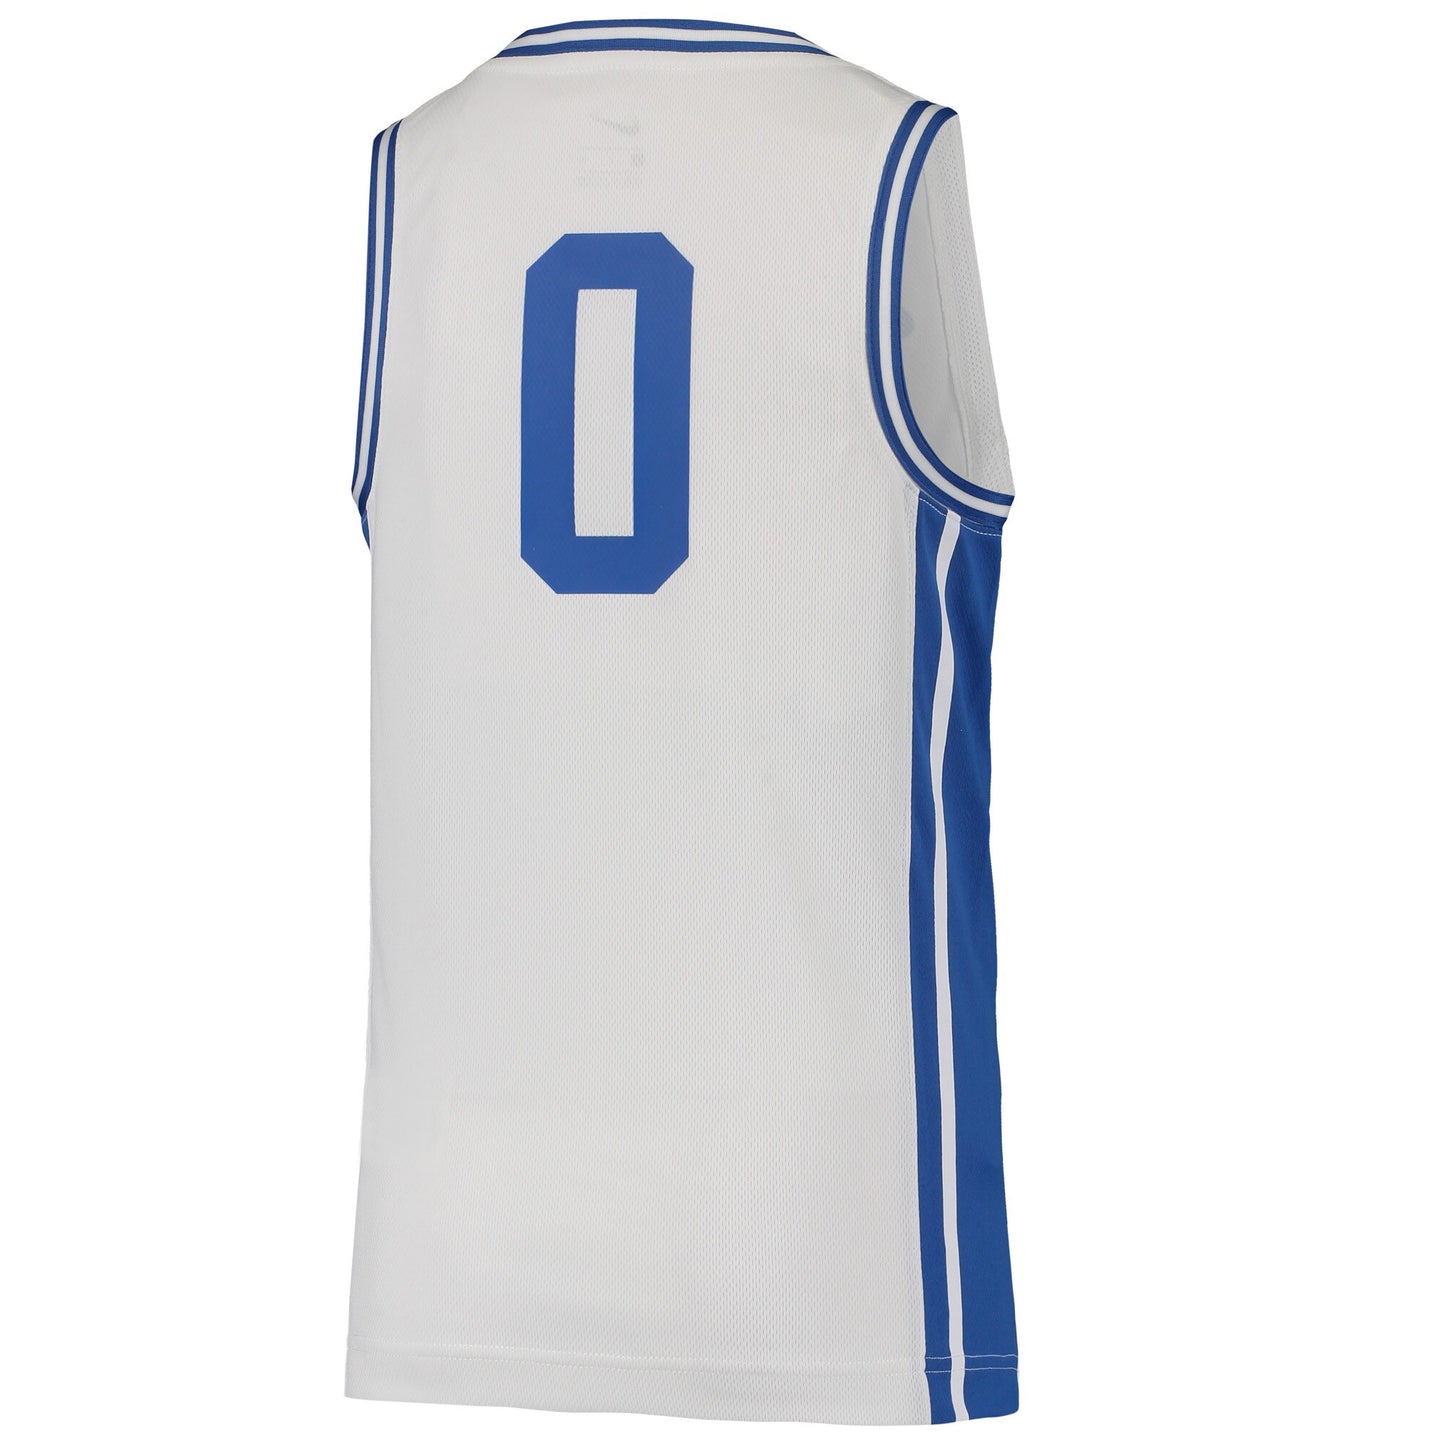 Men's Duke Blue Devils Nike Replica #0 Basketball Jersey -White